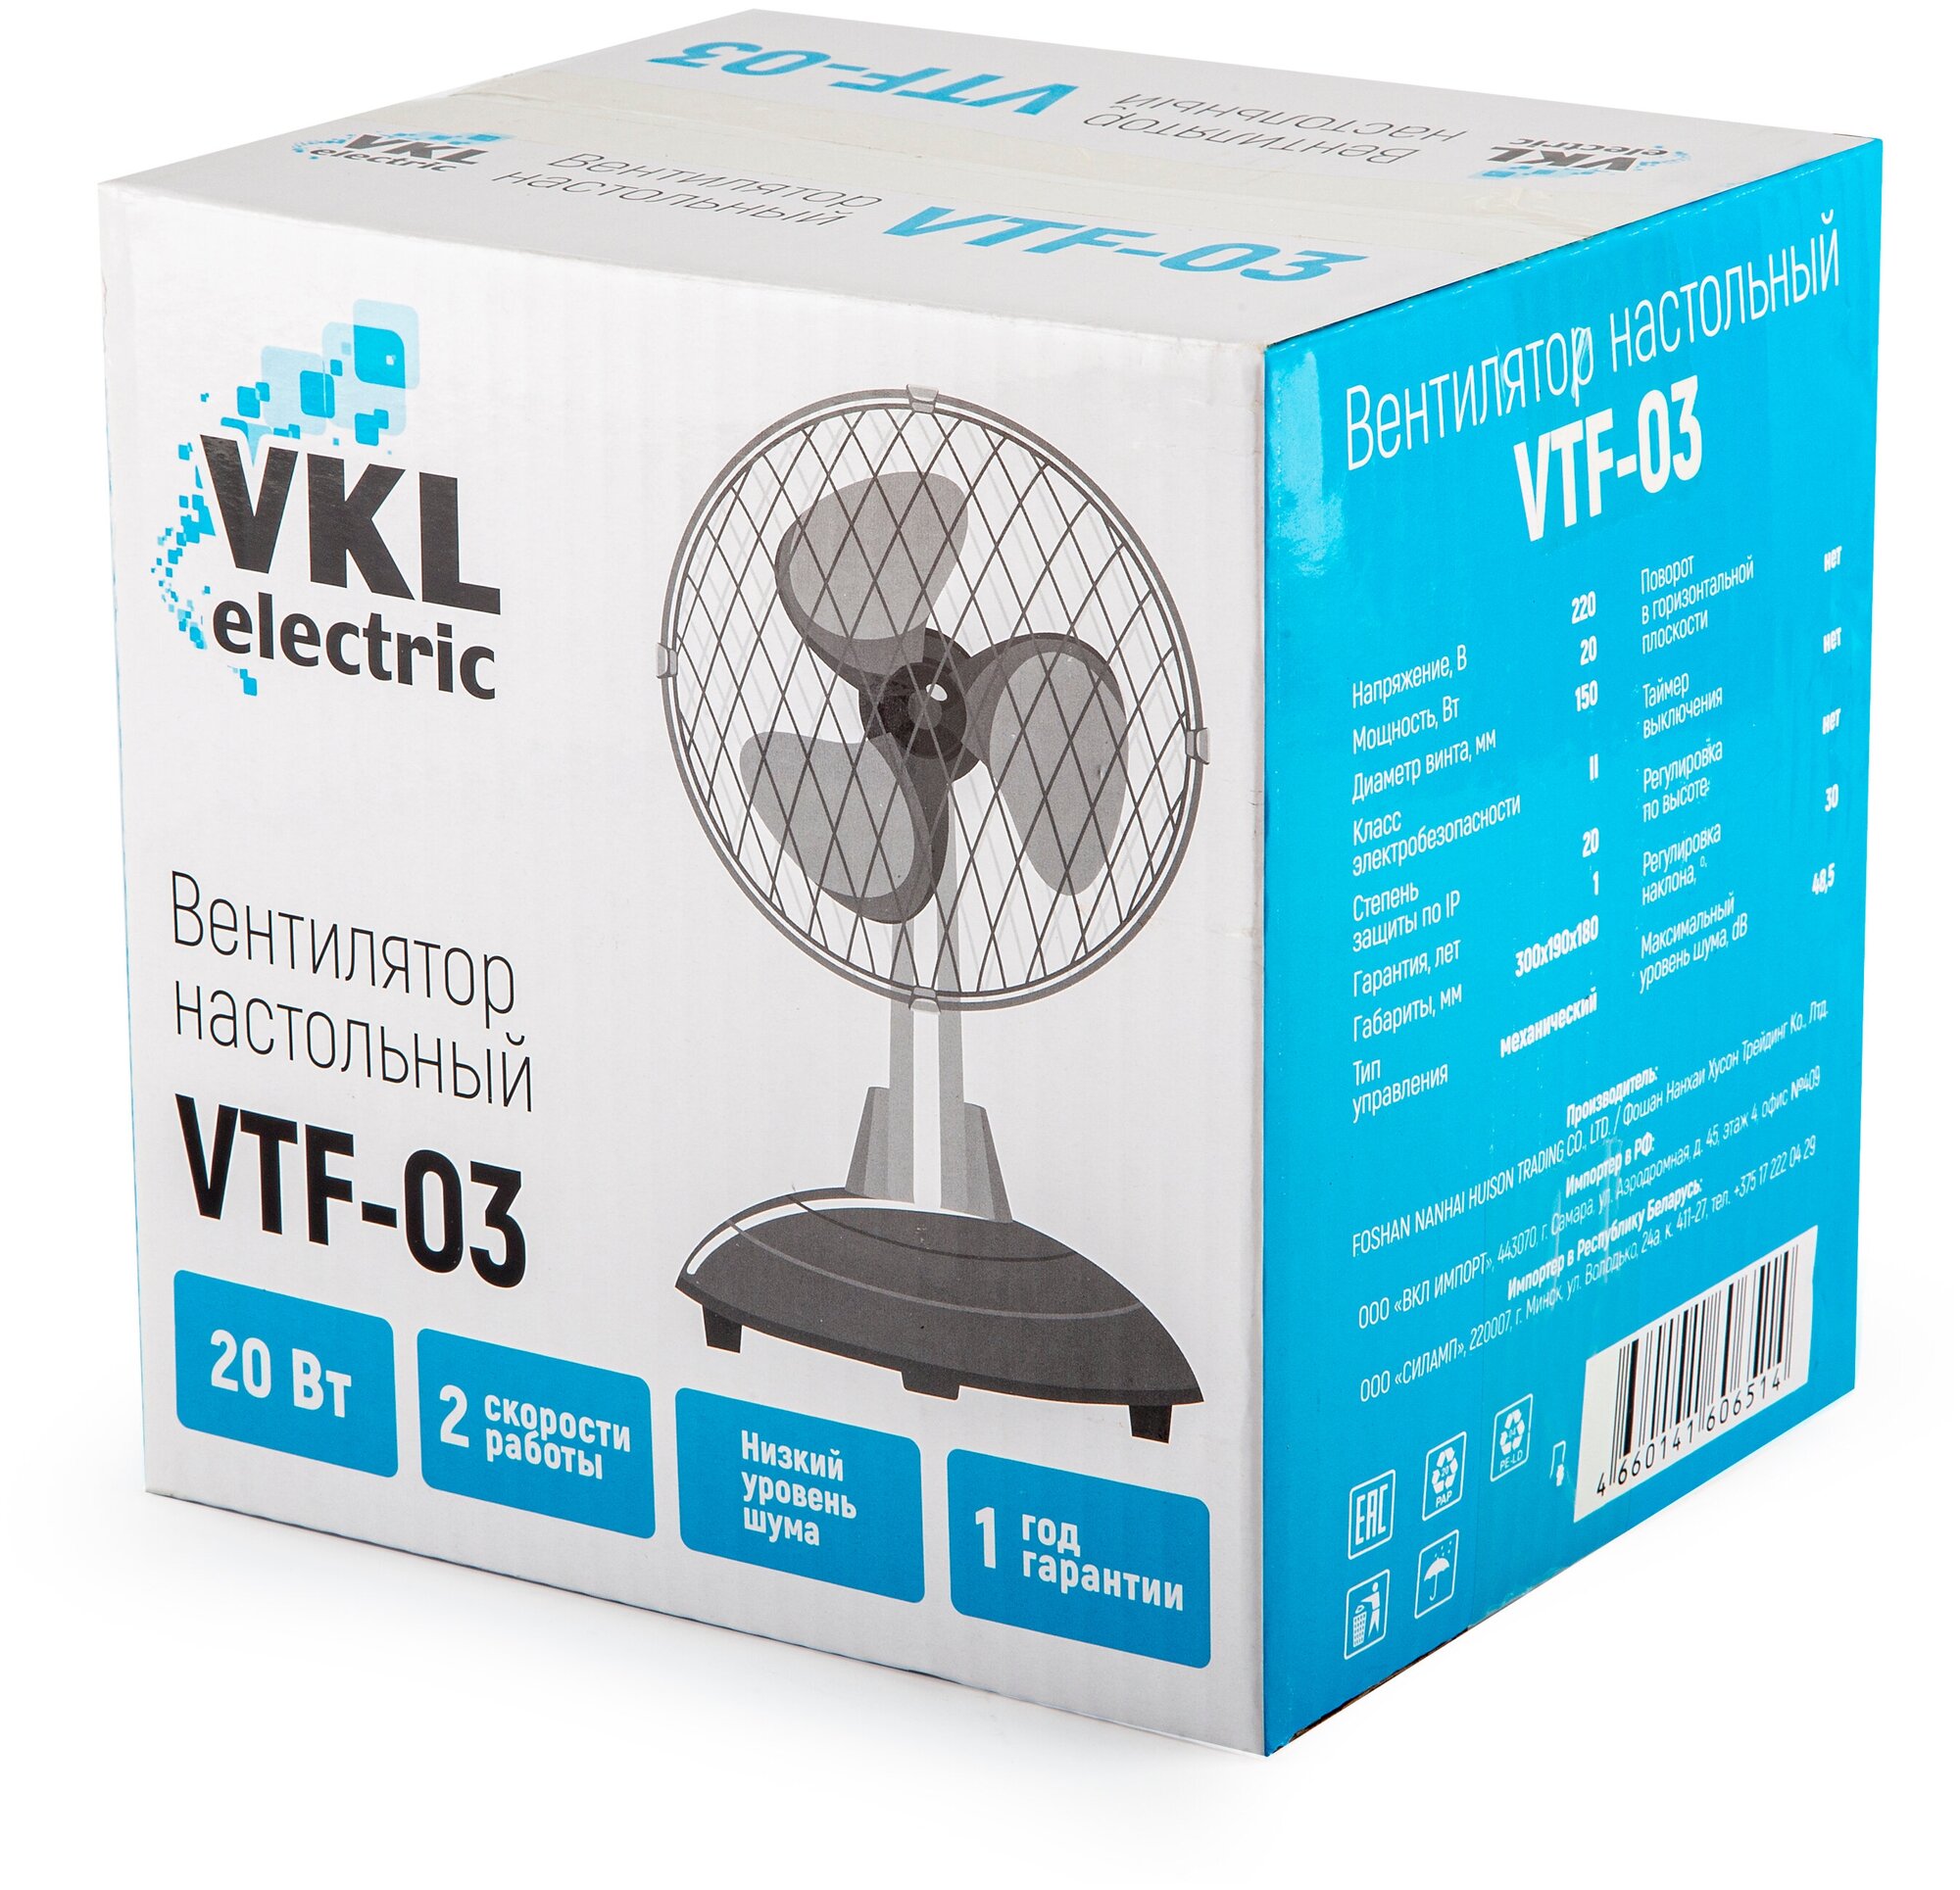 Вентилятор настольный VTF-03 Gray, 20 Вт, 2 режима, 220 В, серый VKL electric с прищепкой